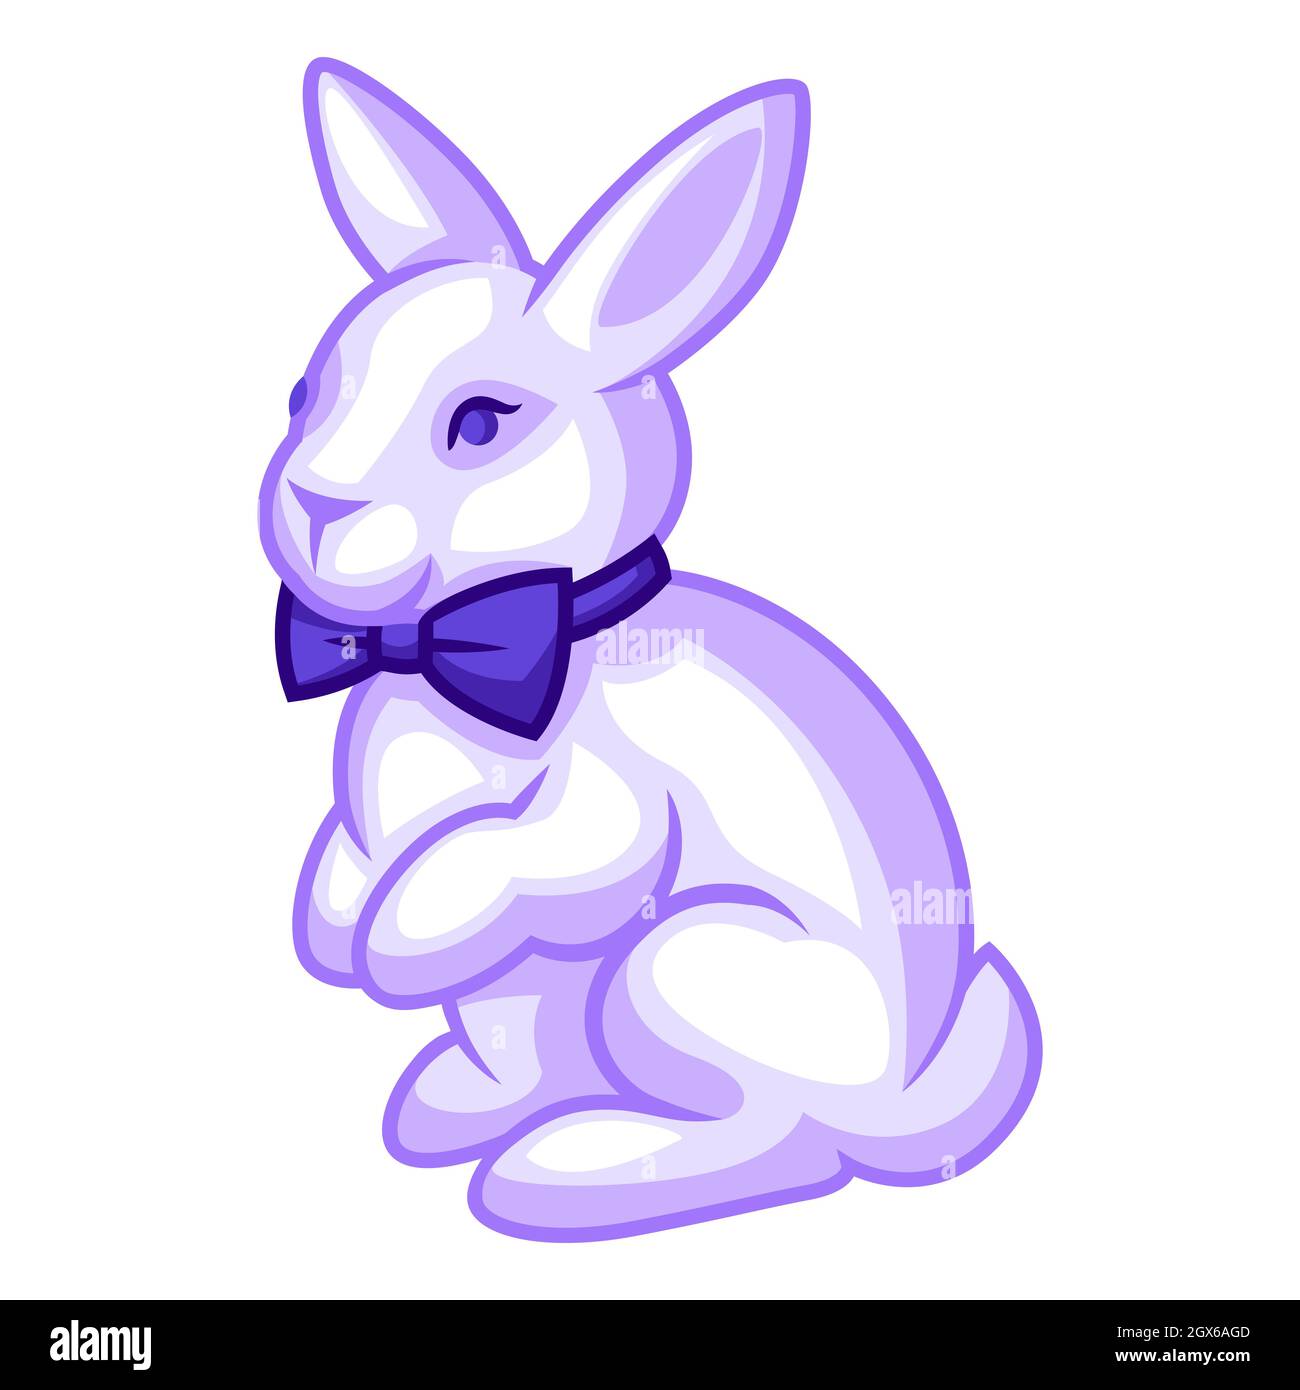 Illustration d'un lapin avec noeud papillon. Image stylisée de dessin animé  Image Vectorielle Stock - Alamy